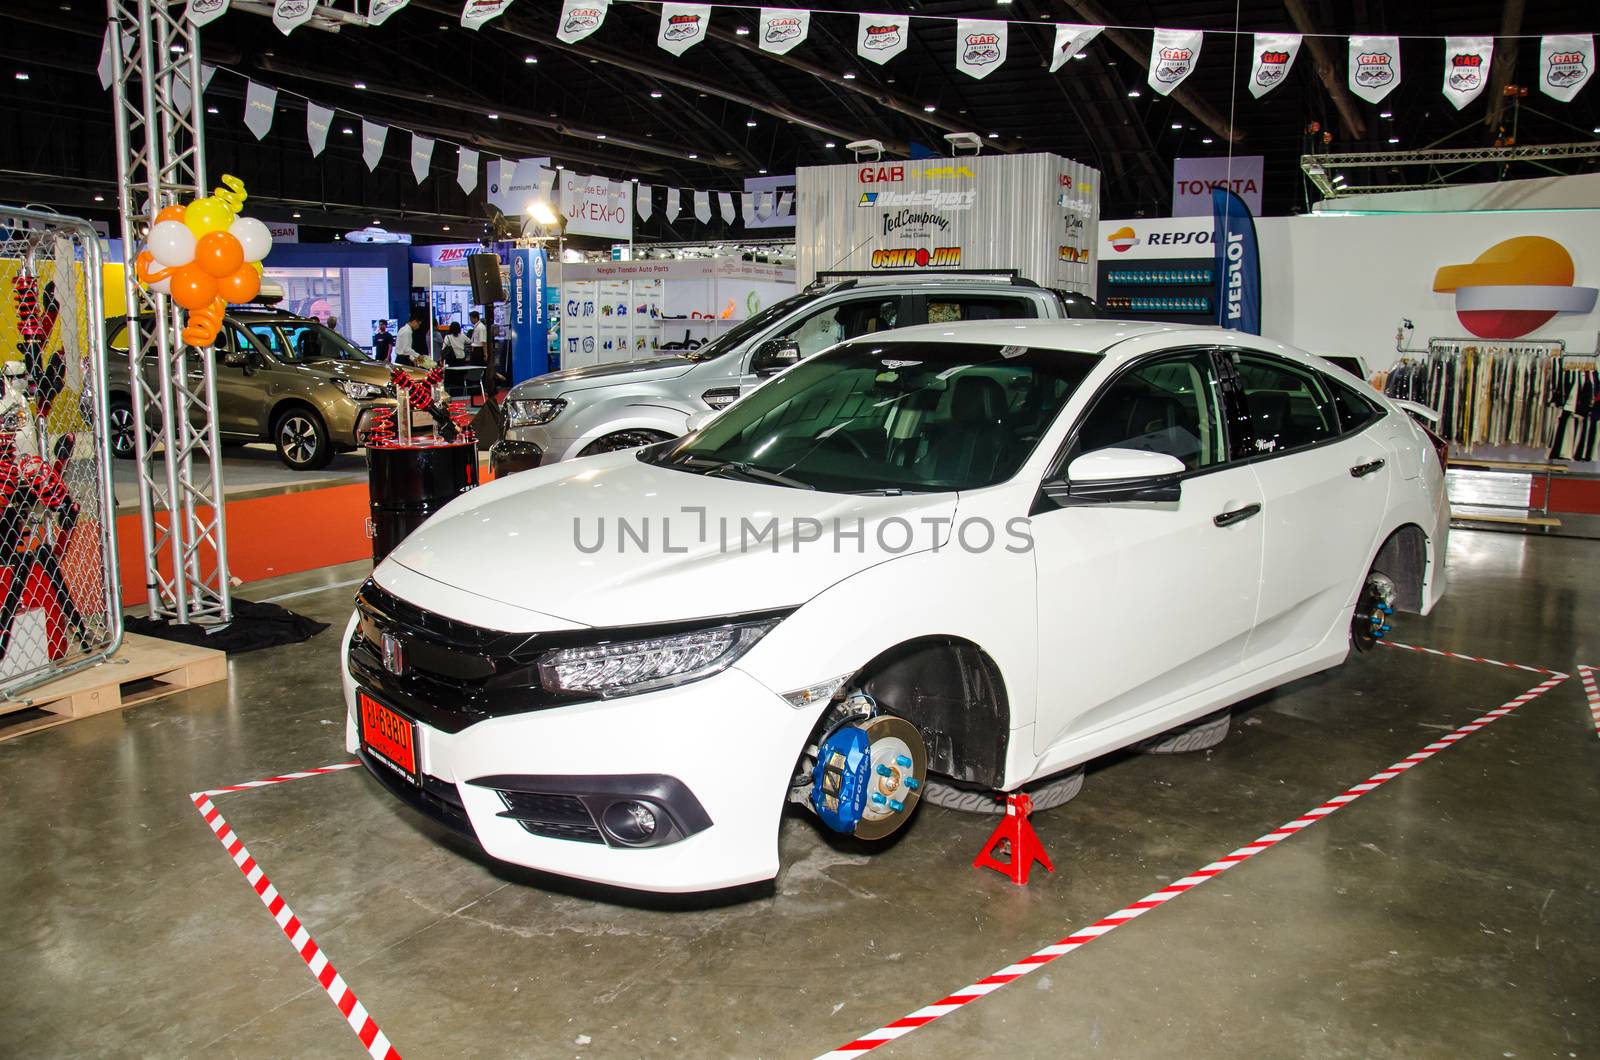 Honda car on display at Bangkok International Auto Salon 2016 by chatchai